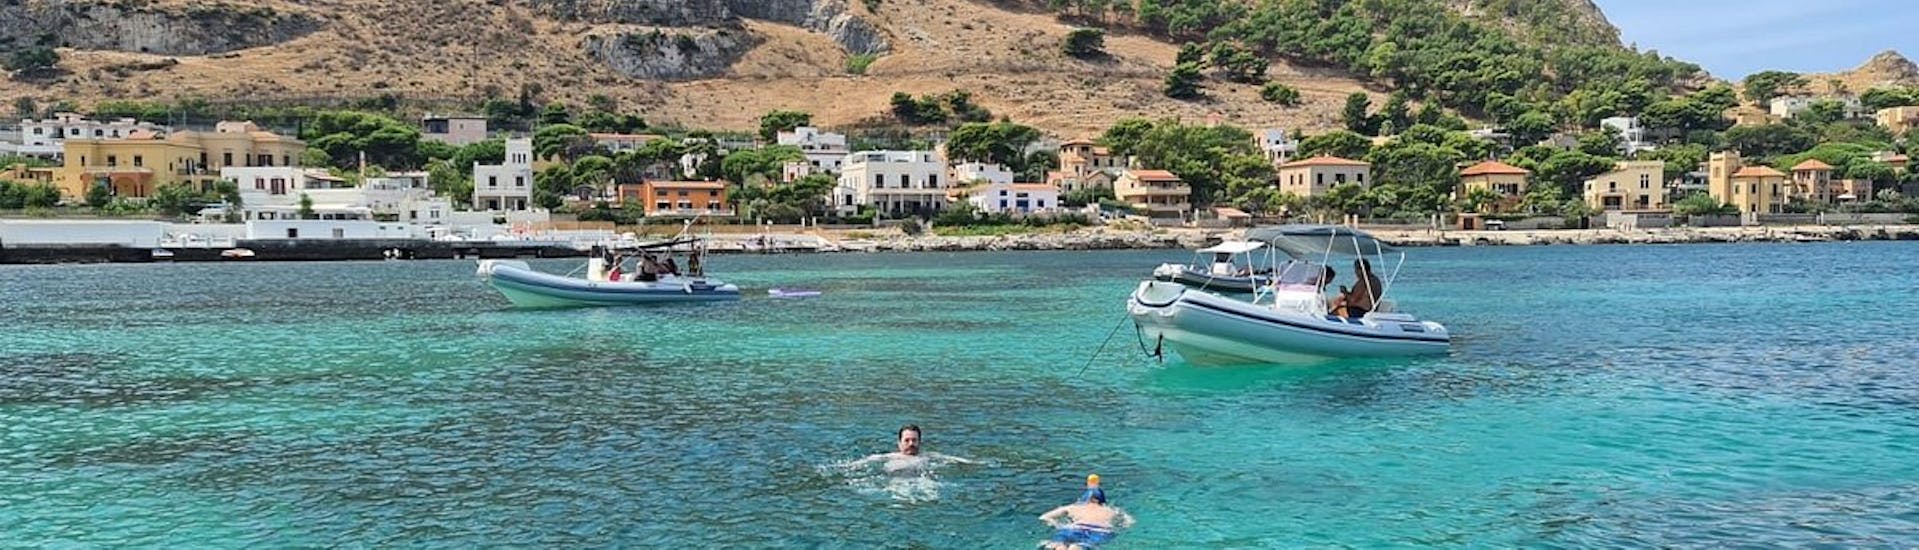 Paseo en barco de Palermo a Vergine Maria Beach  & baño en el mar.